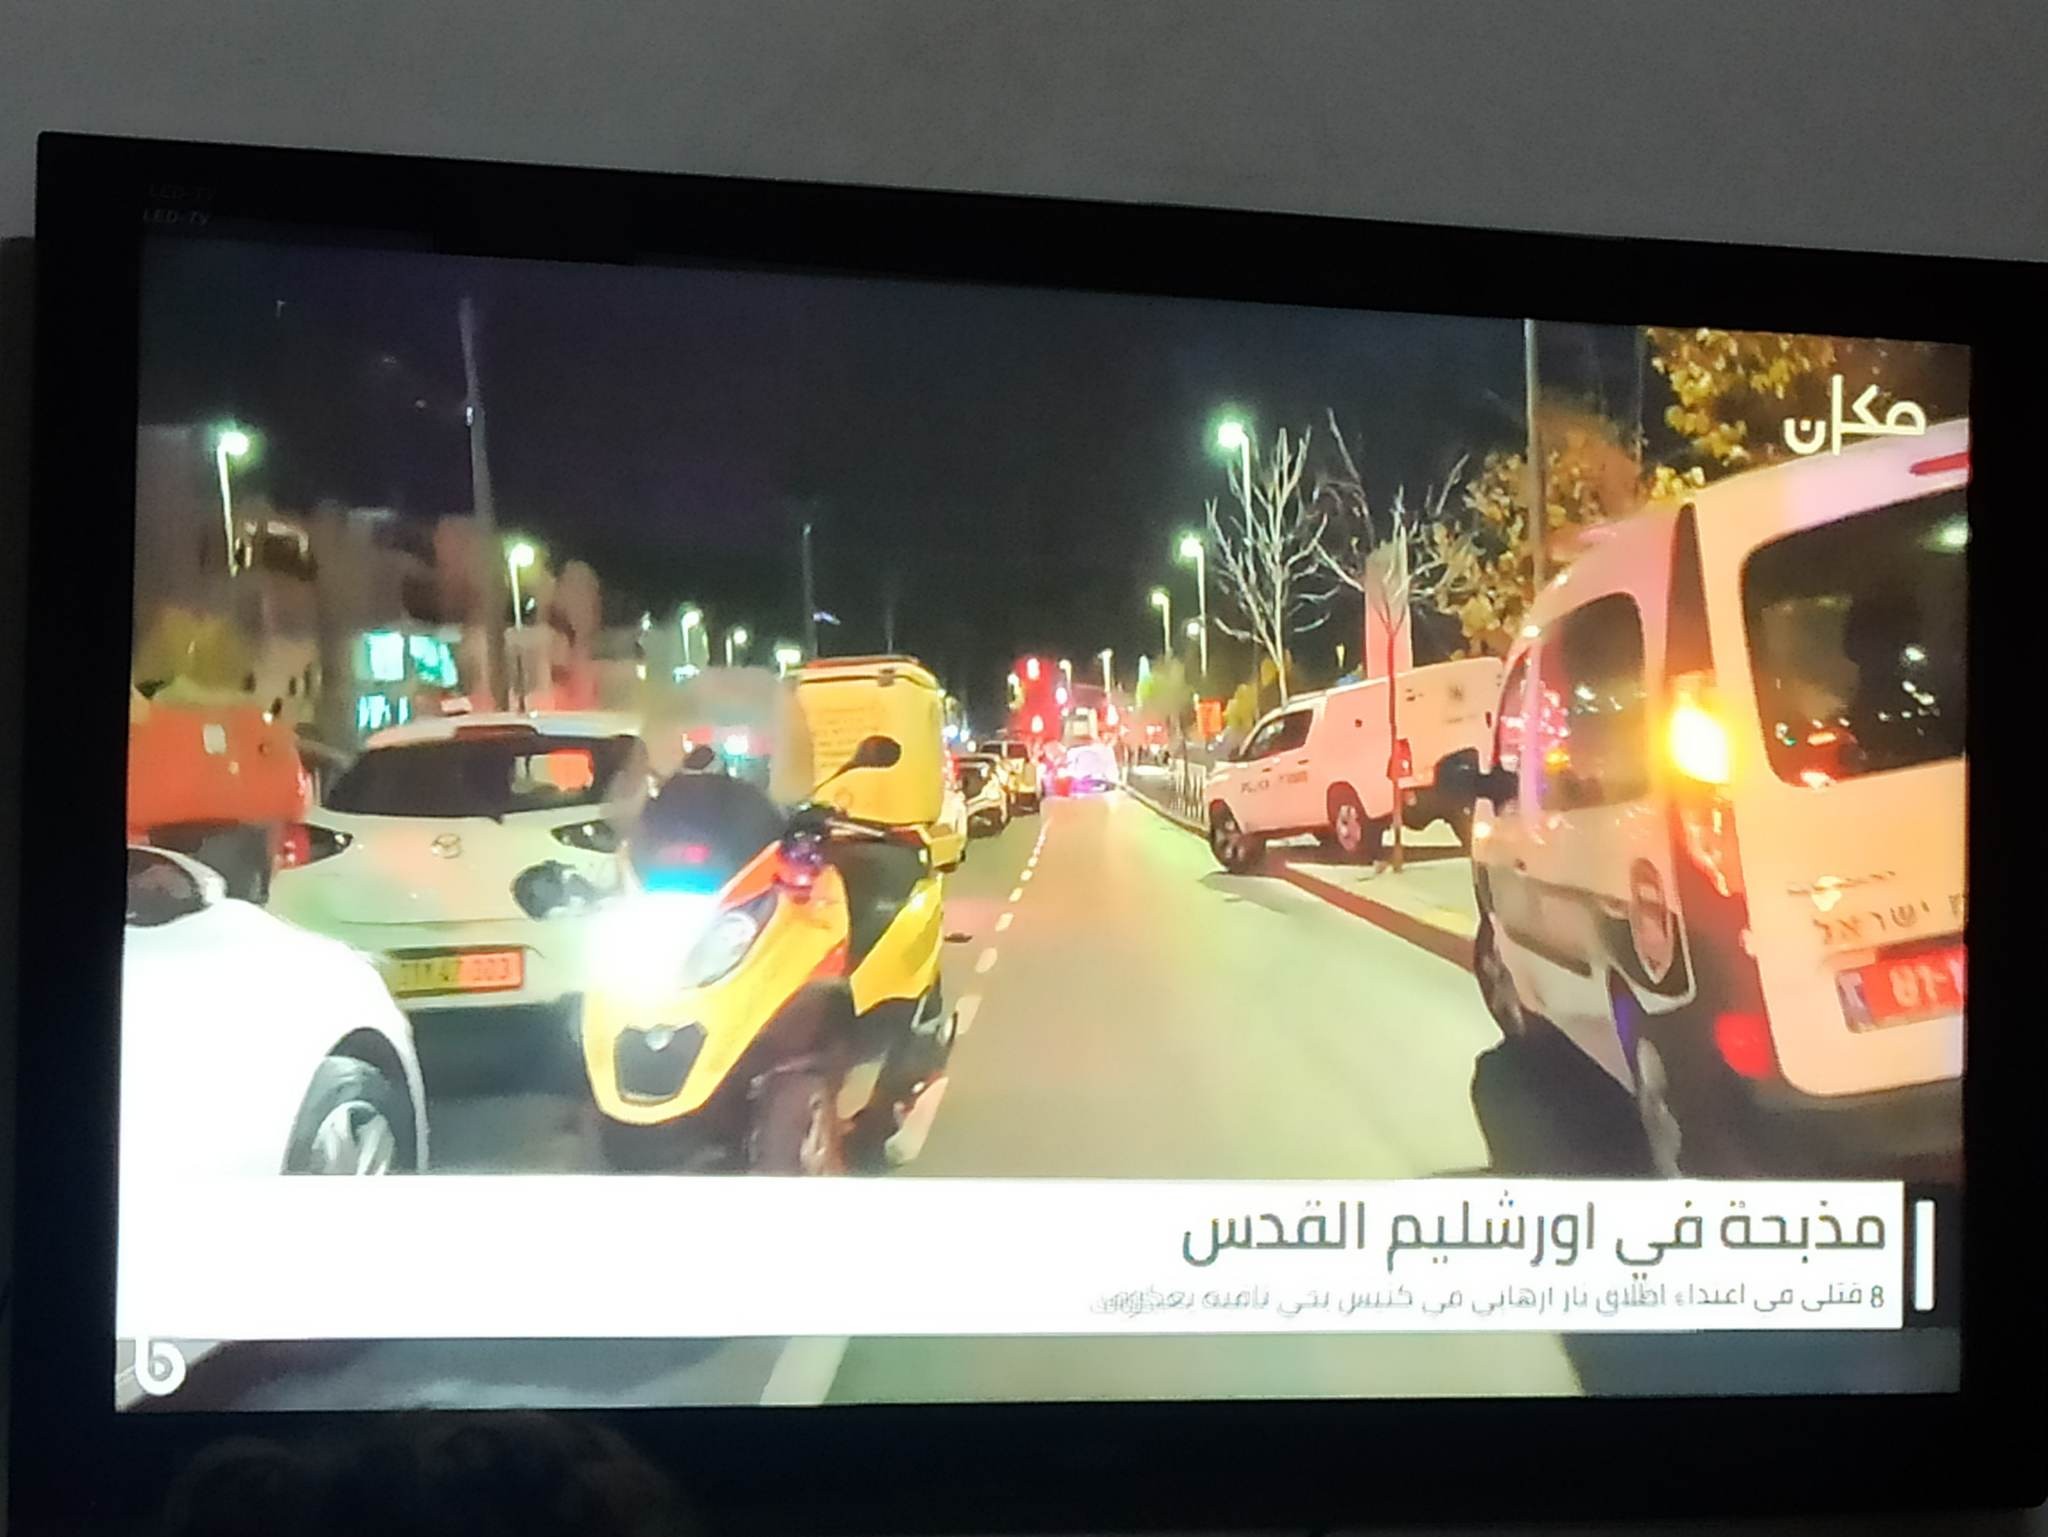 بالفيديو والصور: 8 قتلى وإصابات في عملية إطلاق نار قرب بيت حنينا بالقدس